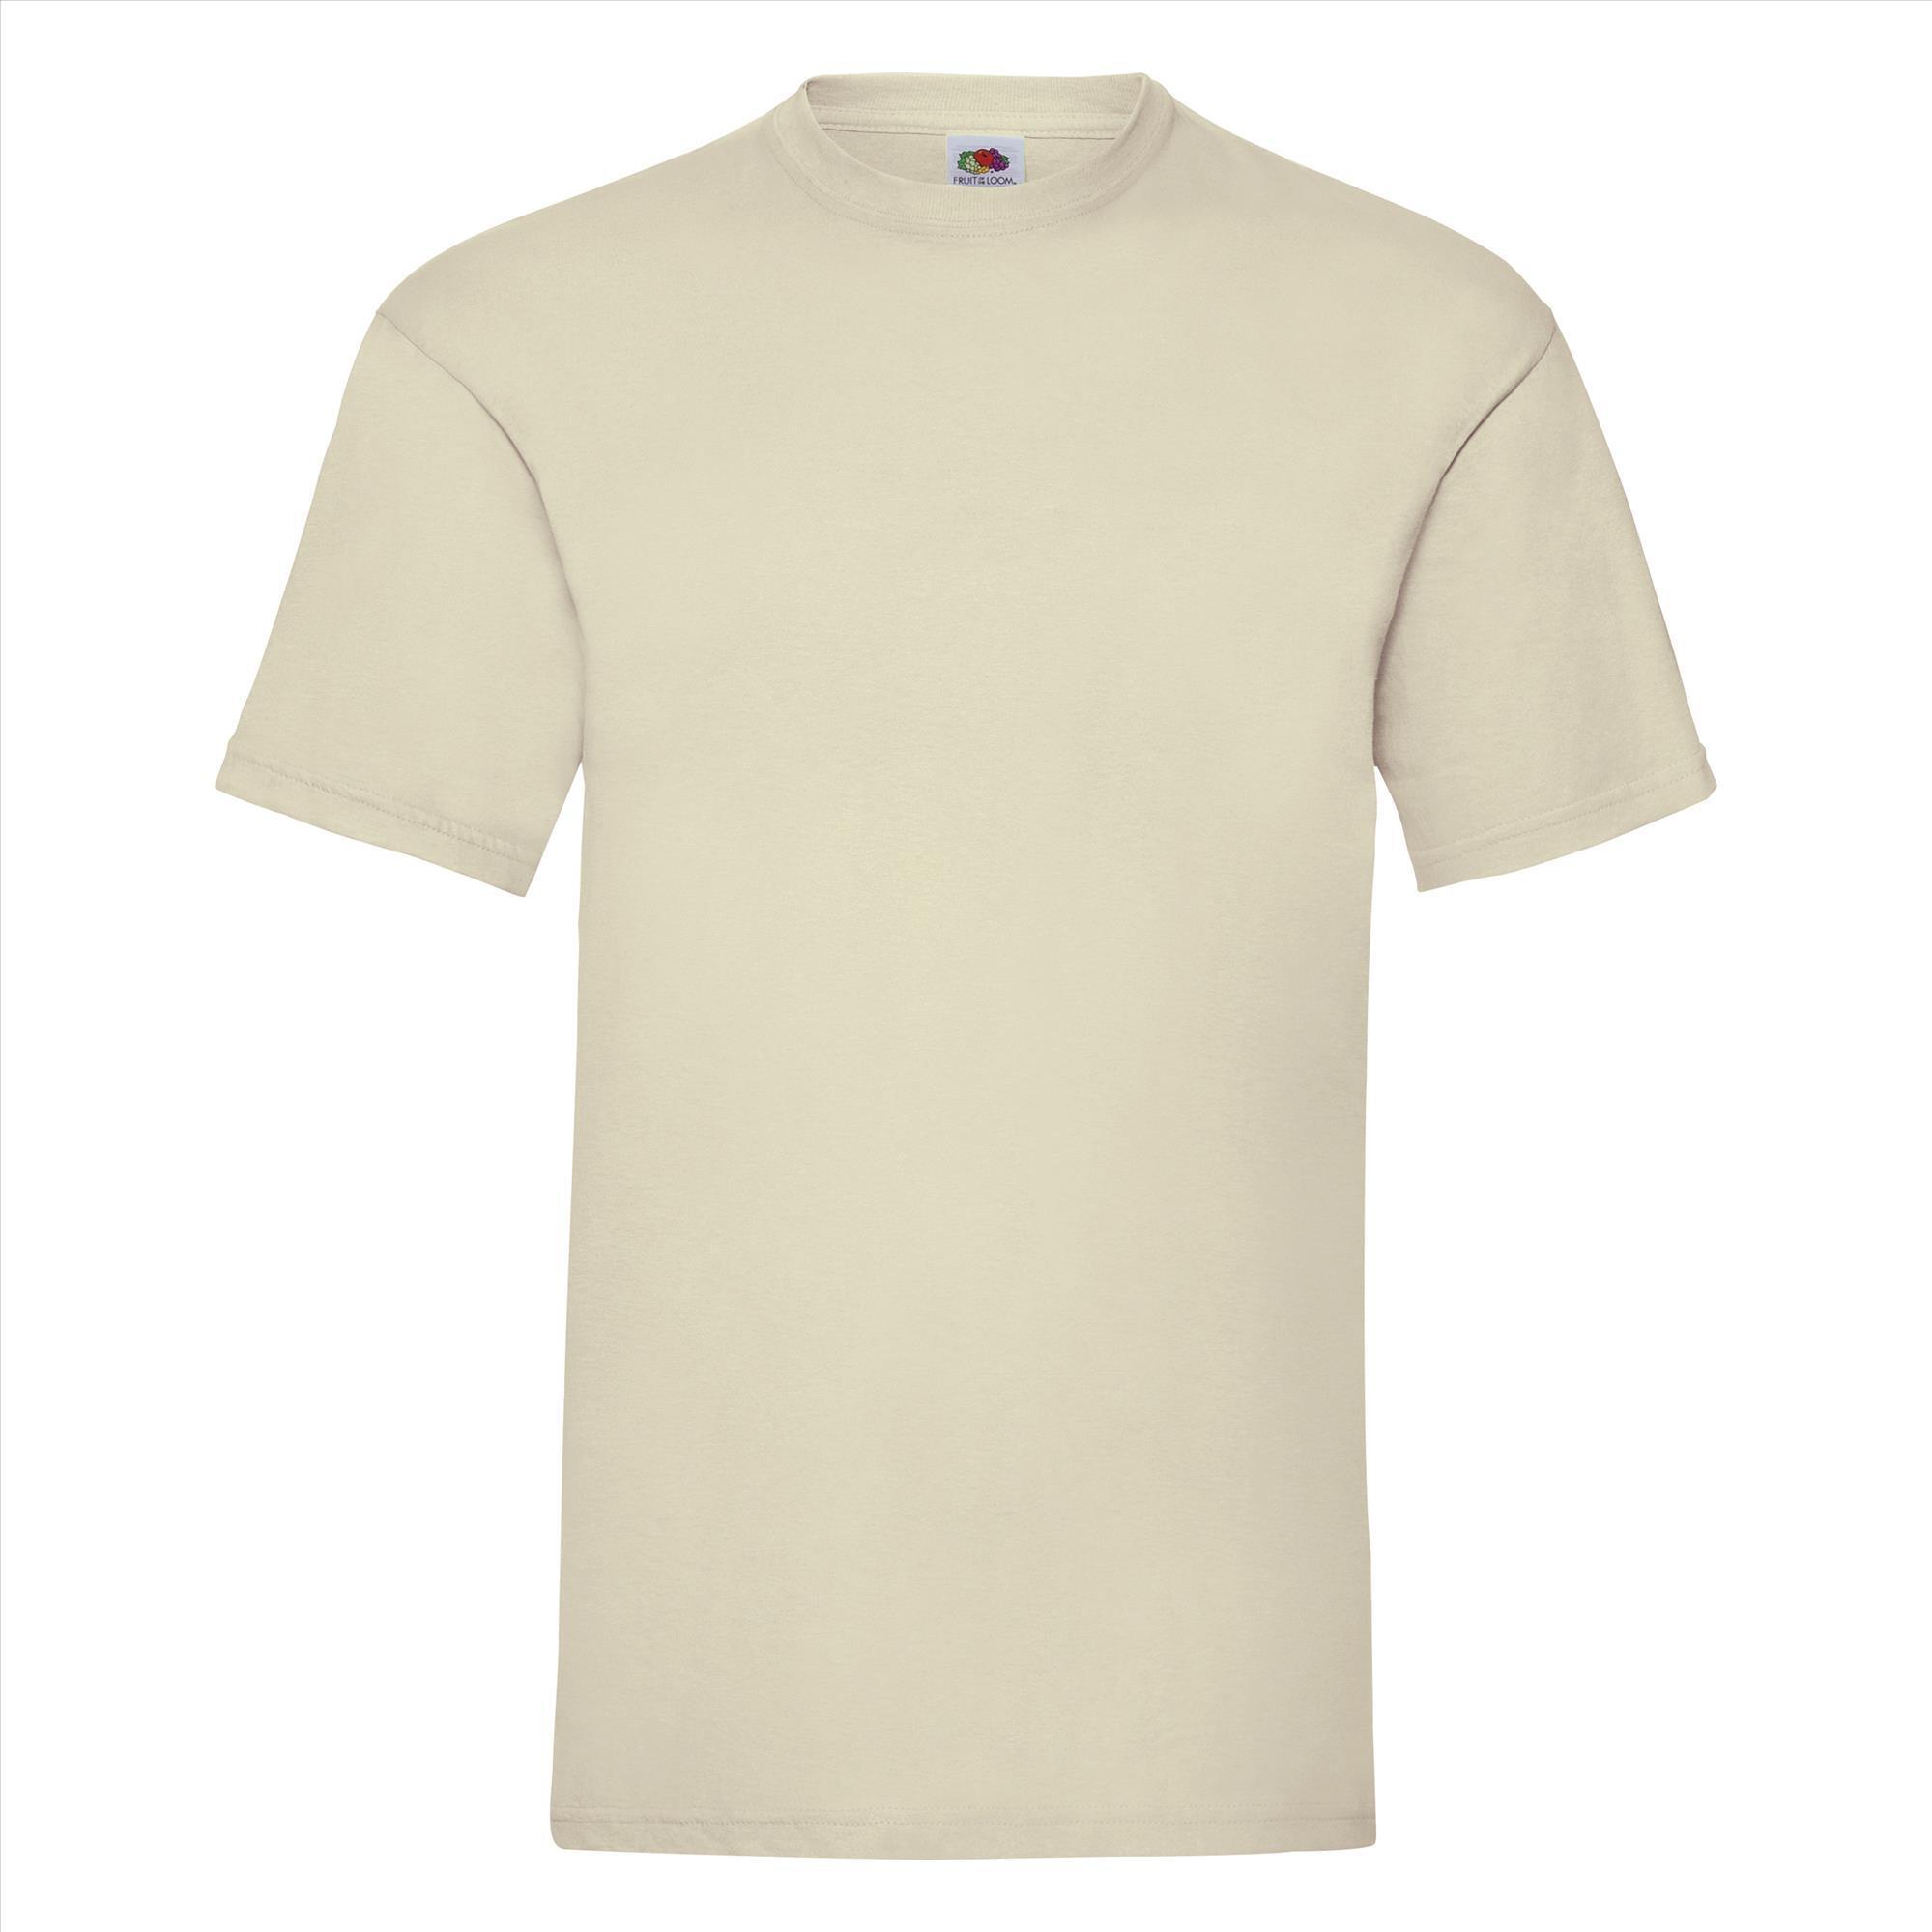 T-shirt voor mannen naturel personaliseren T-shirt bedrukken